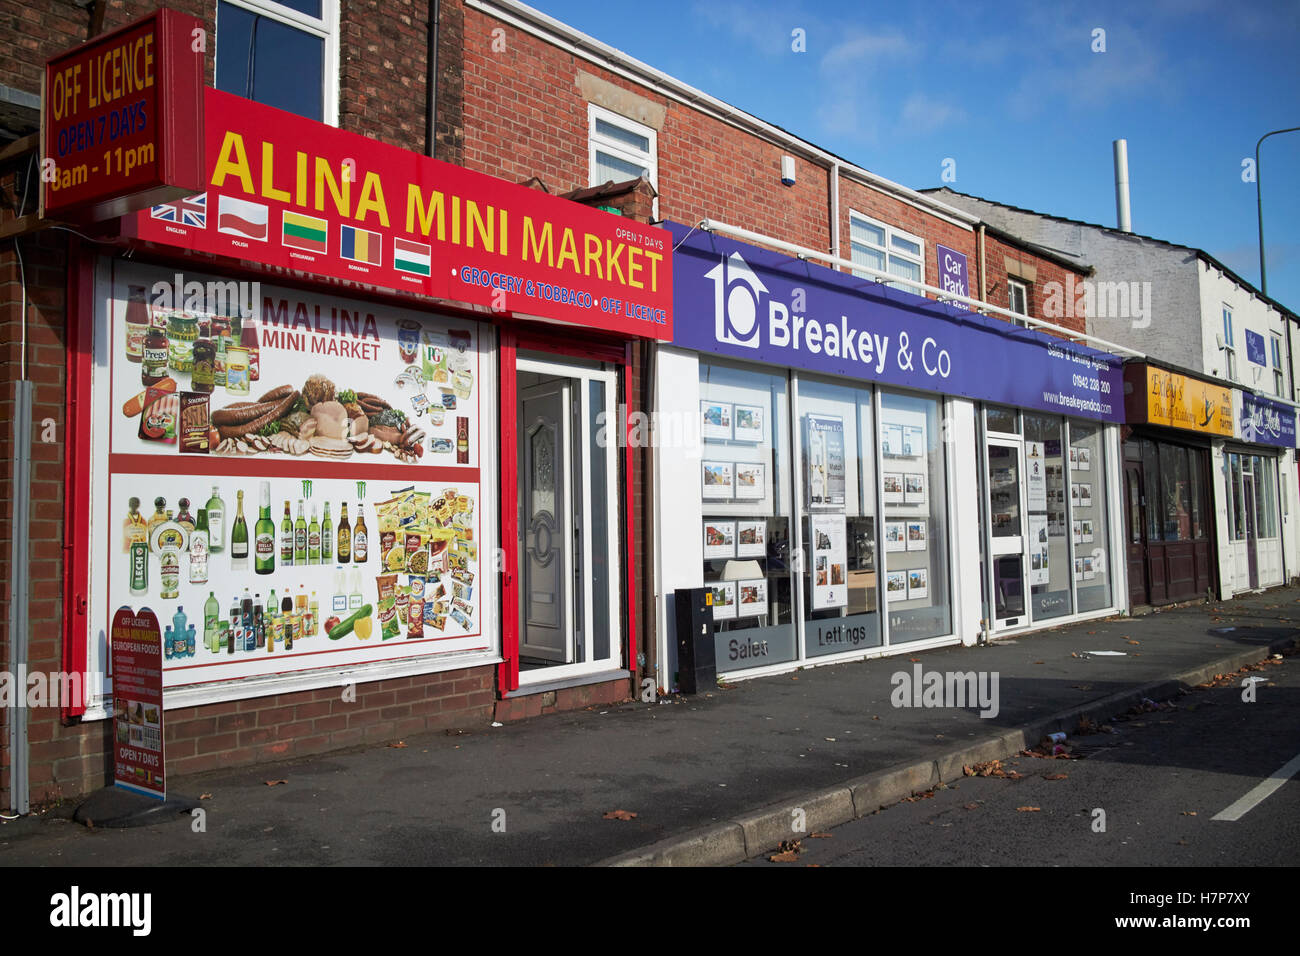 östliche Europäische Nahrung Mini Markt und Immobilienmakler-Shops auf einer Straße in Wigan England uk Stockfoto